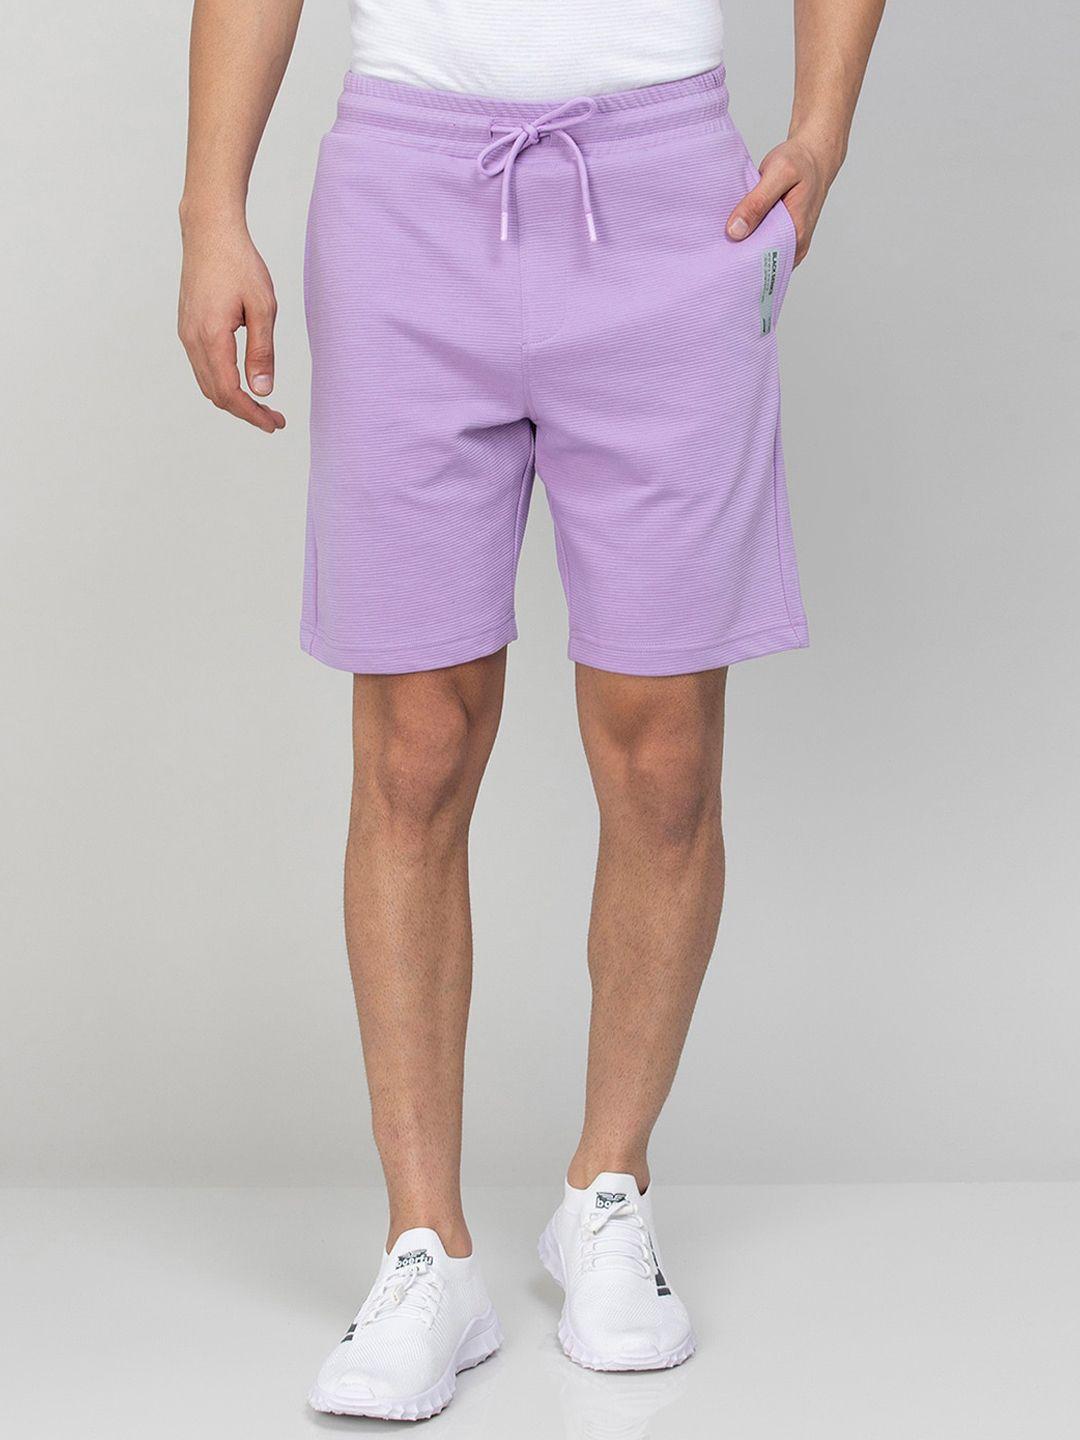 bossini-men-cotton-mid-rise-shorts